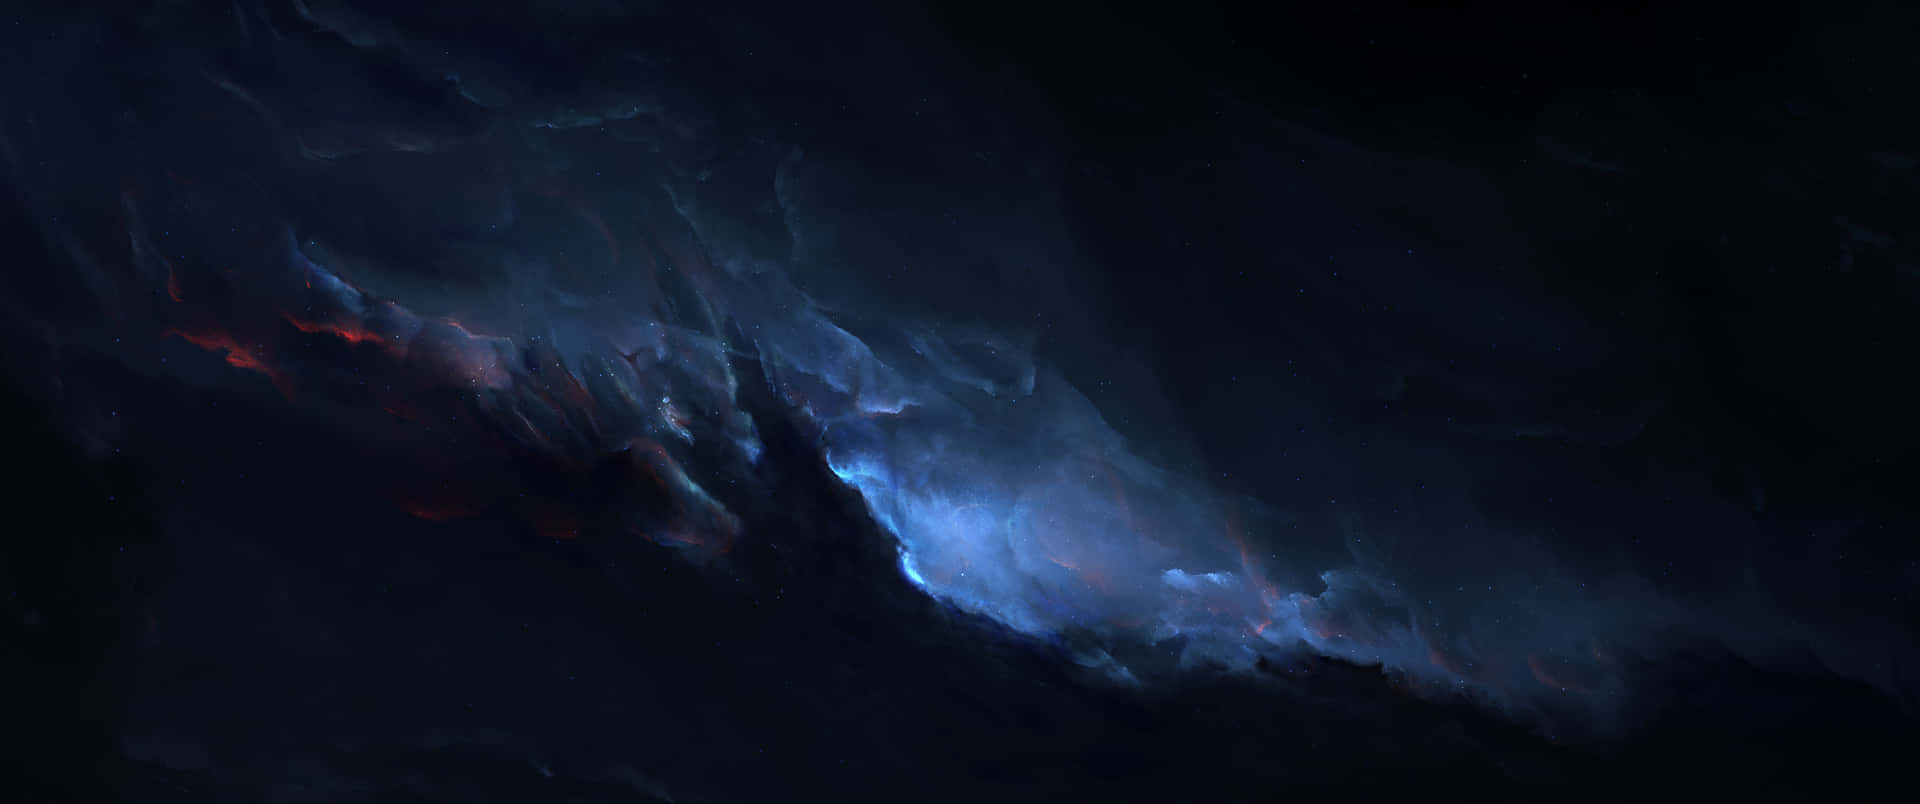 3440x1440p Mørkeblå Nebulabaggrund